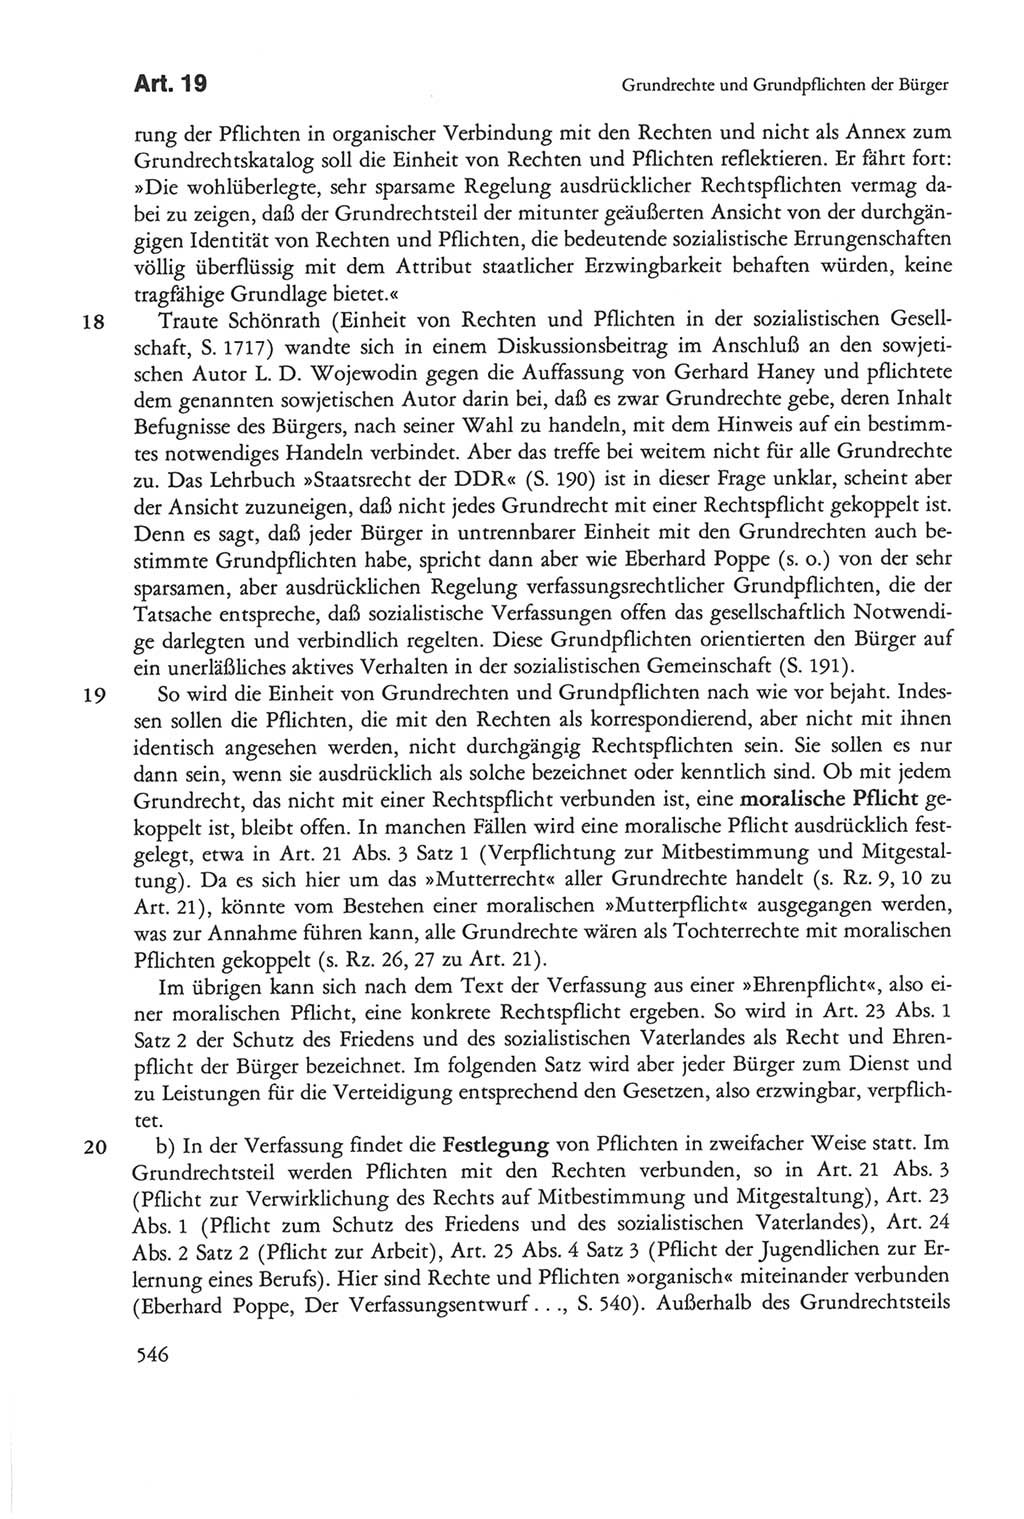 Die sozialistische Verfassung der Deutschen Demokratischen Republik (DDR), Kommentar 1982, Seite 546 (Soz. Verf. DDR Komm. 1982, S. 546)